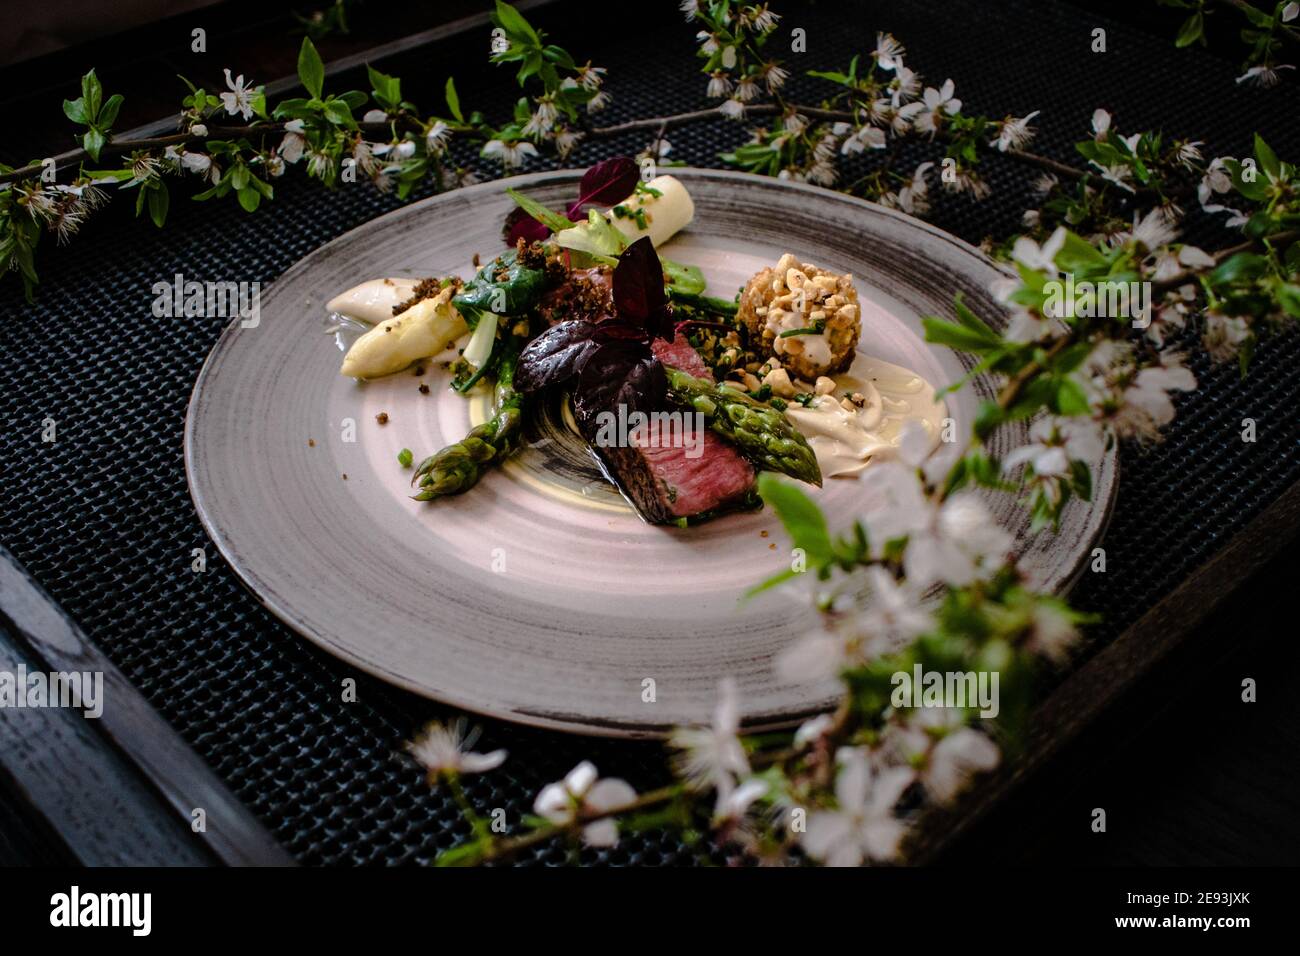 Plat de steak d'autruche avec asperges blanches et vertes, légumes verts et sauce sur une assiette sur une table en bois dans un restaurant Banque D'Images